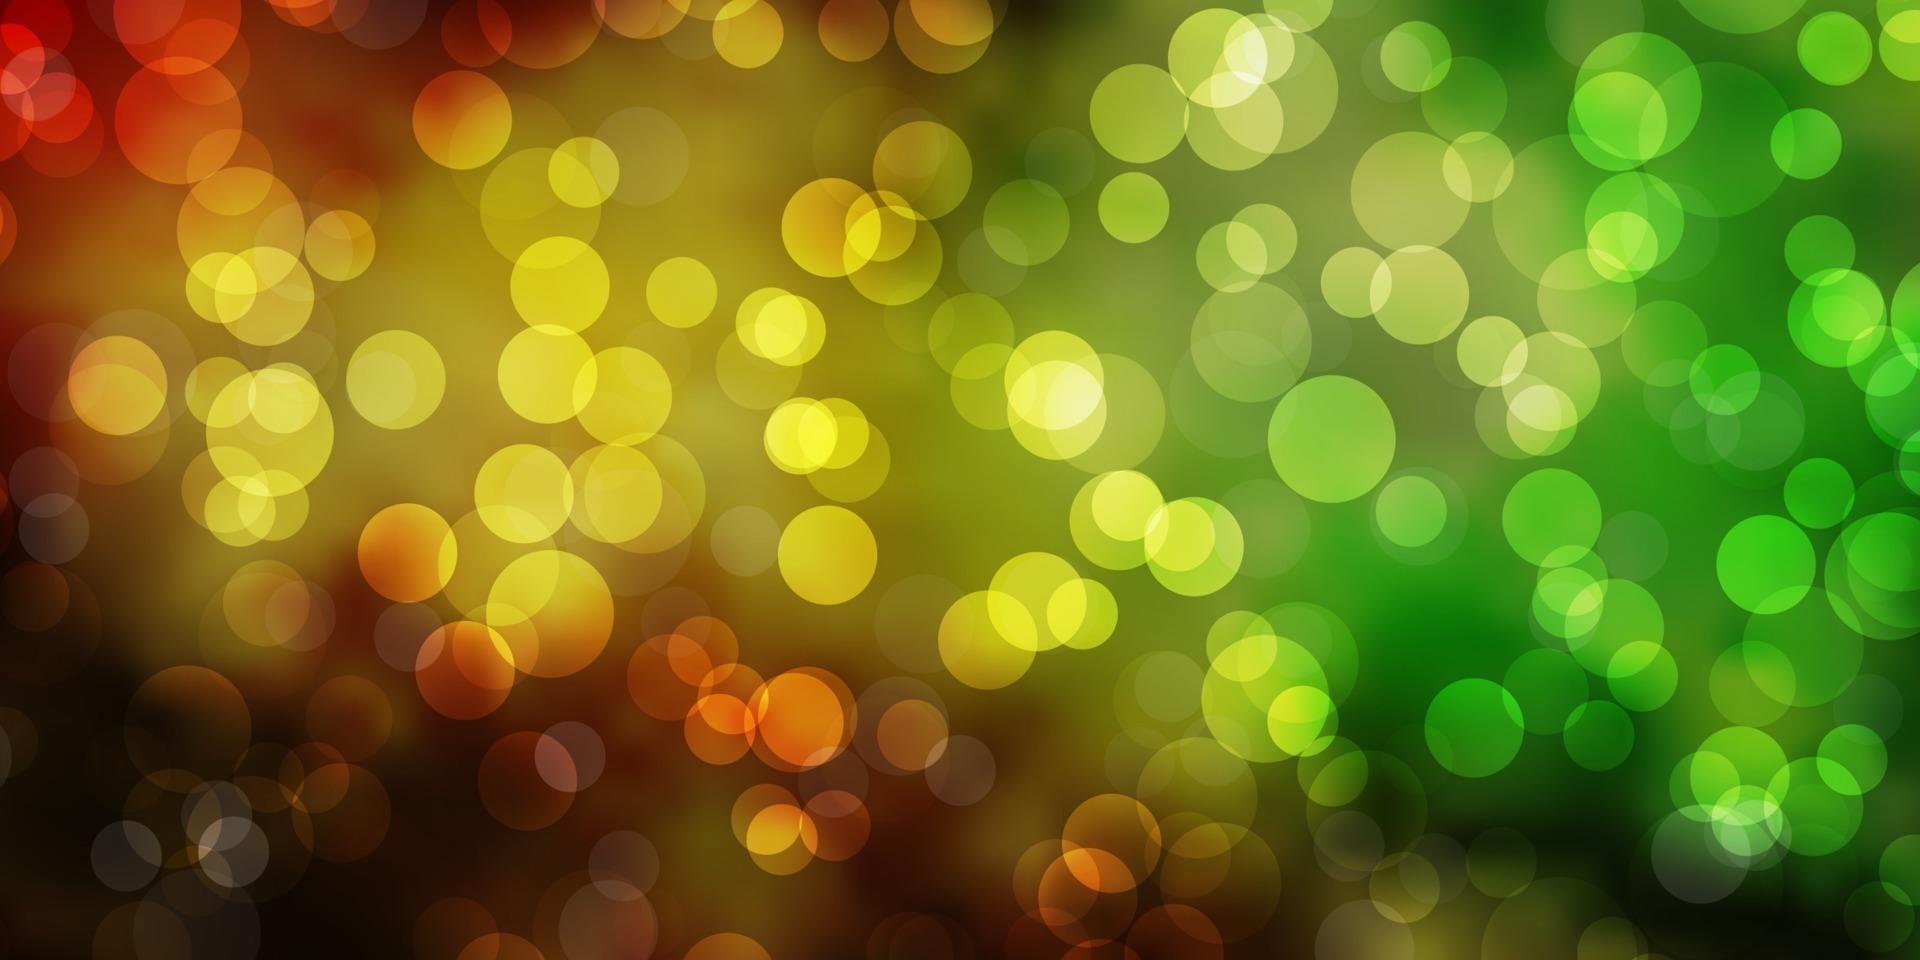 ljusgrön, gul vektorbakgrund med bubblor. vektor